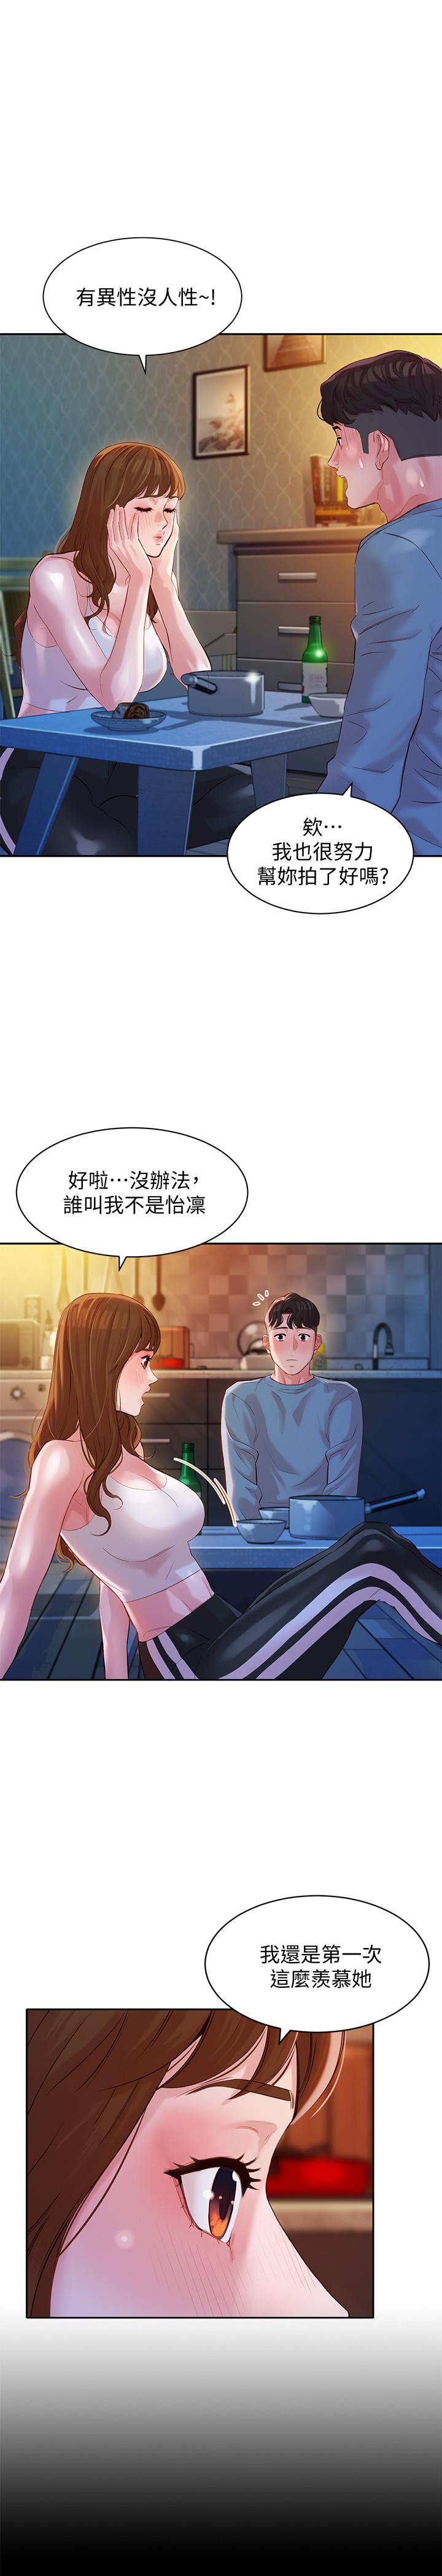 韩国污漫画 女神寫真 第14话-在两人之间流动的微妙情感 13